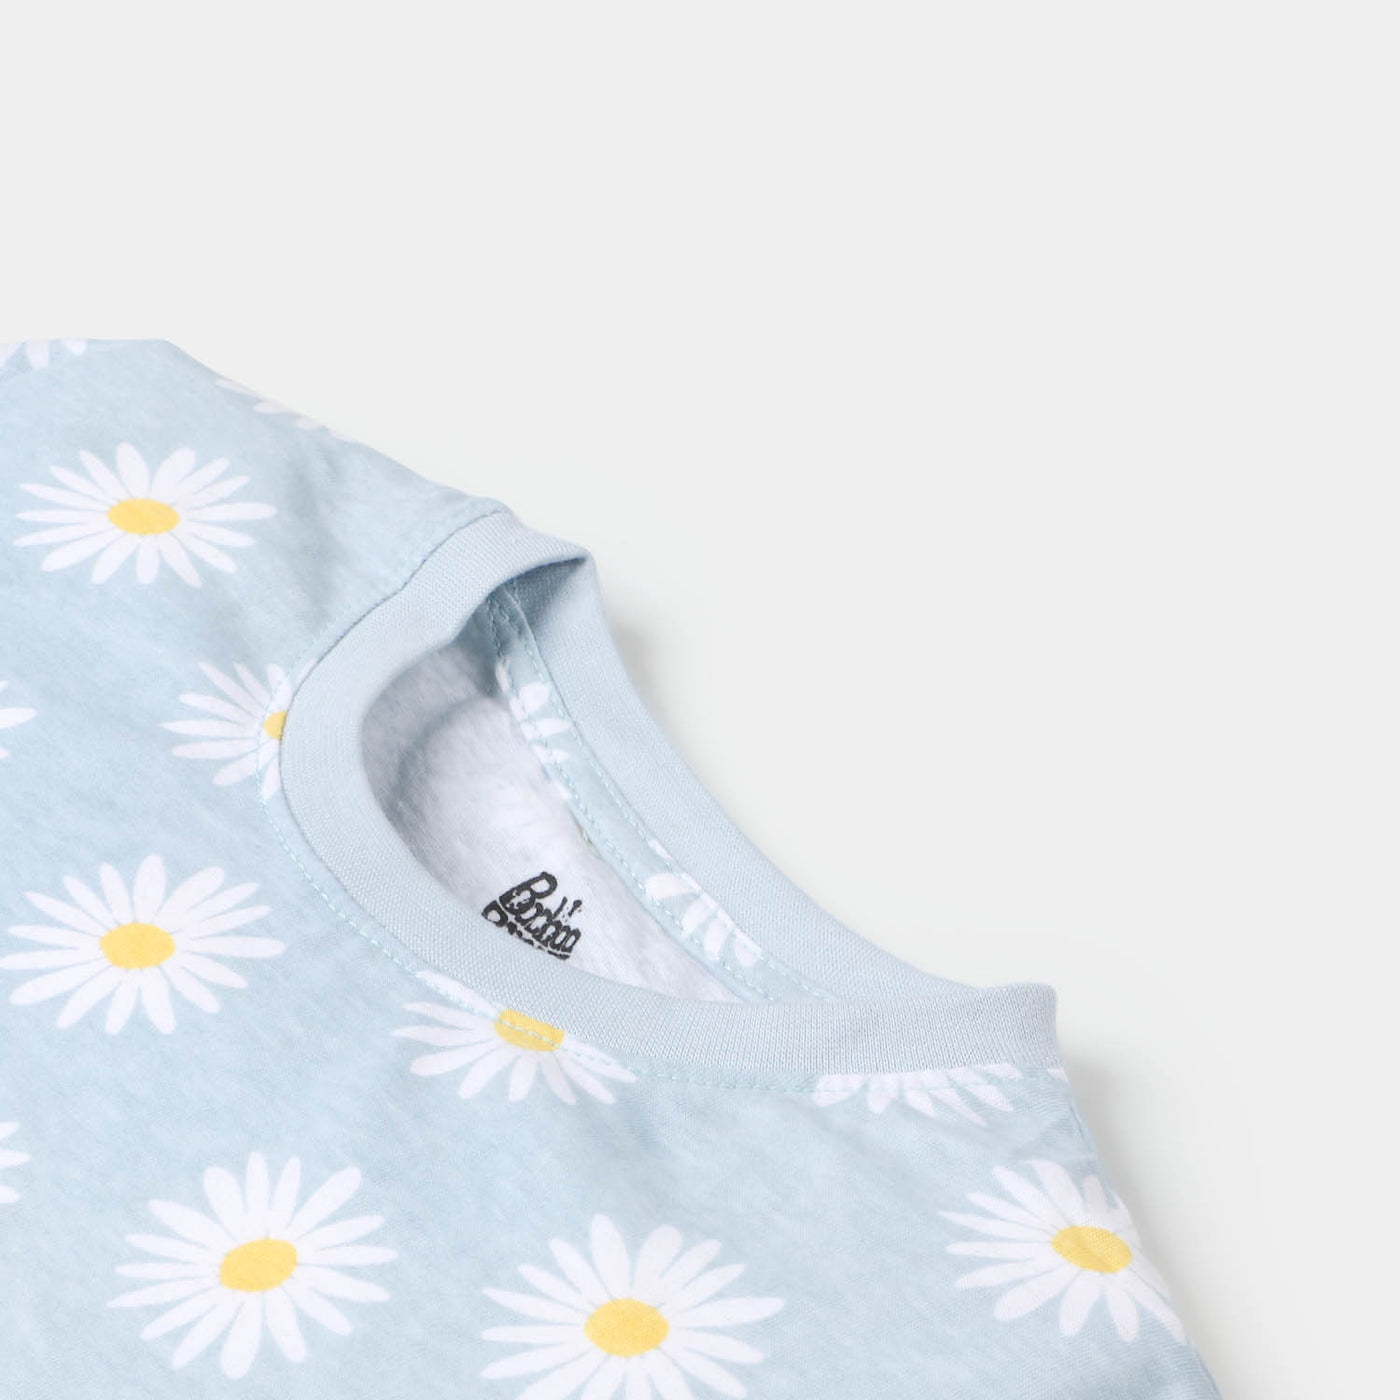 Girls T-Shirt Printed Daisy Flower - Light Blue